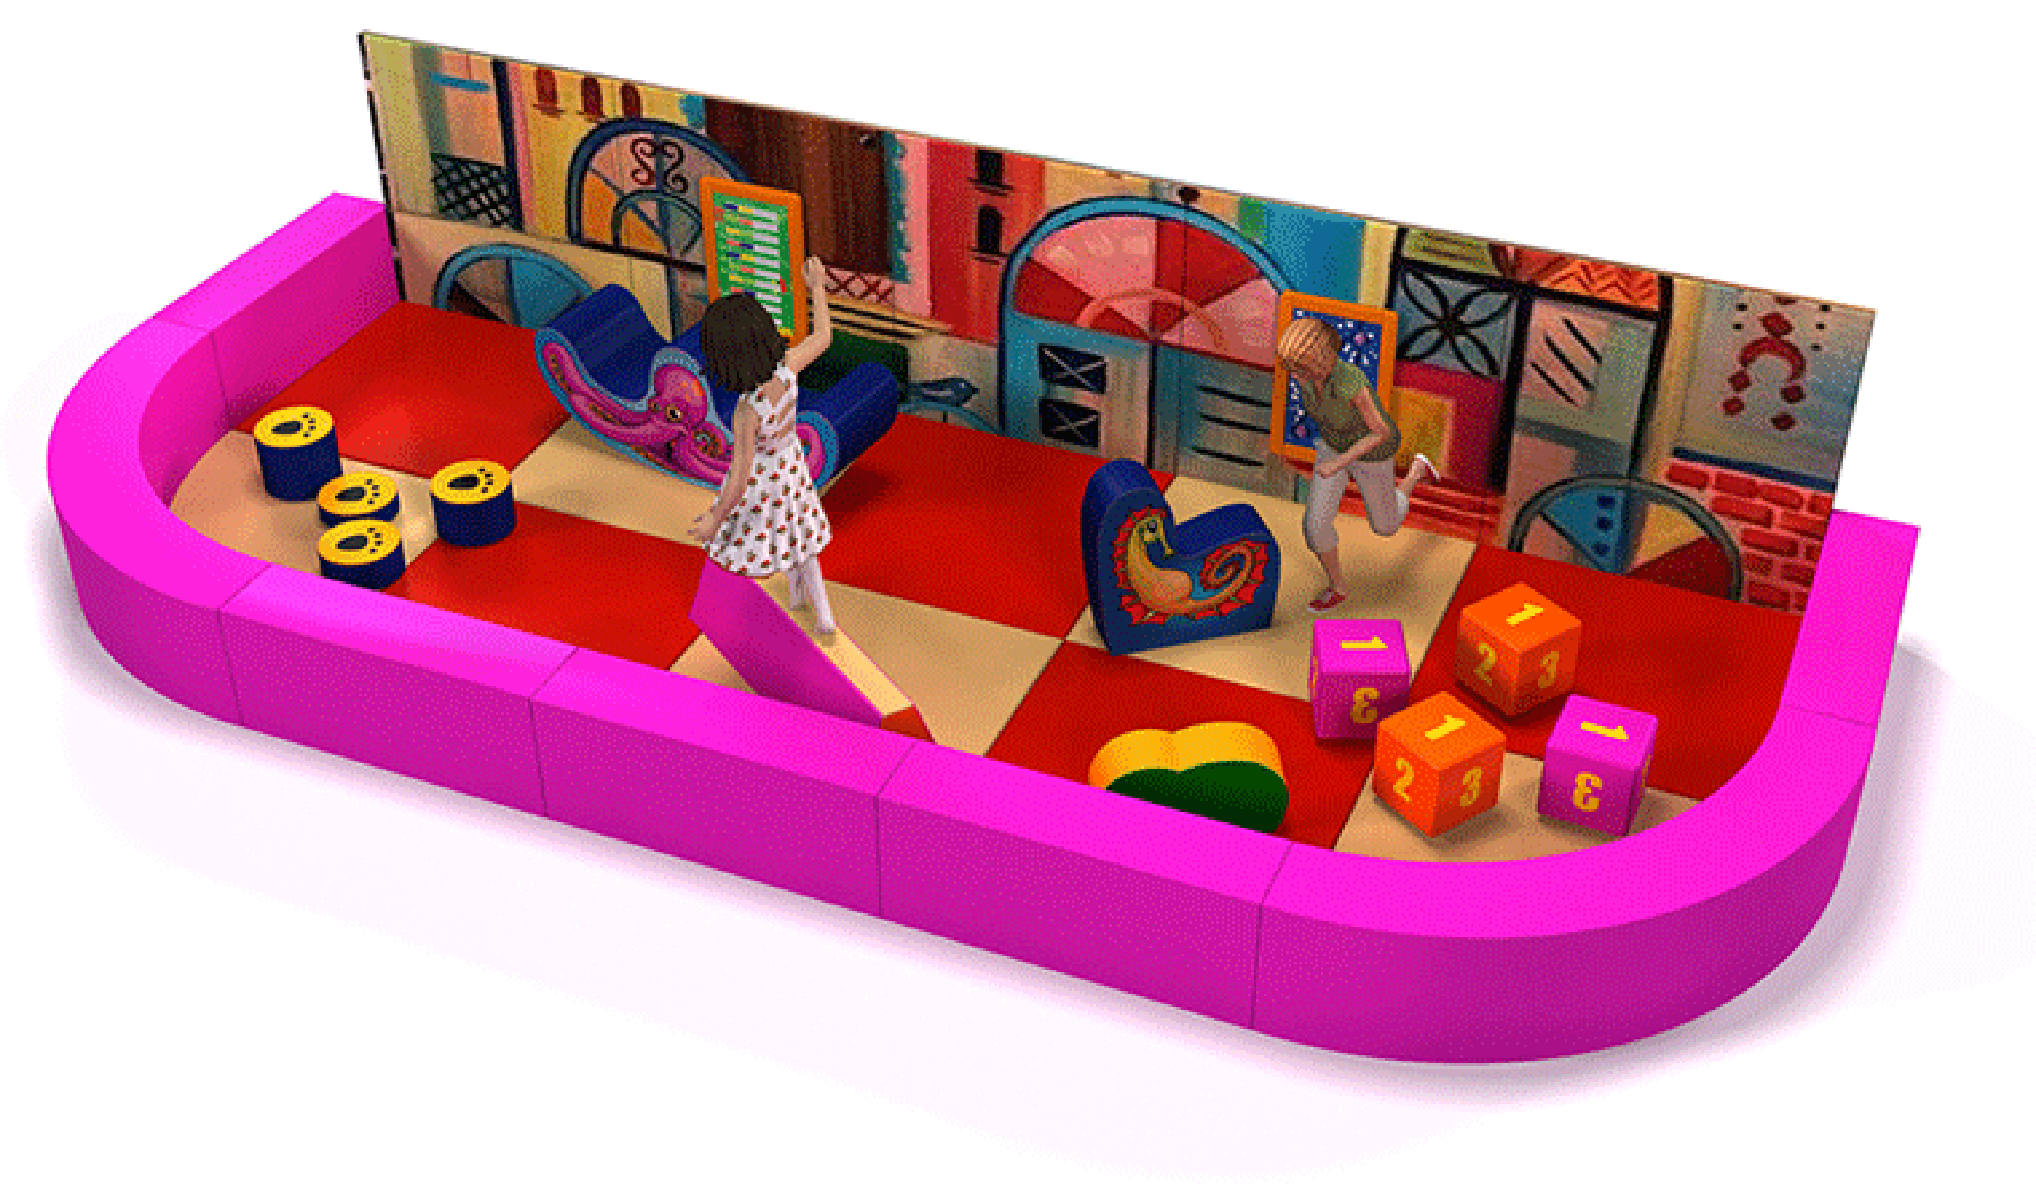 Soft play voor kleuters en peuters in indoor speeltuinen of kids corners